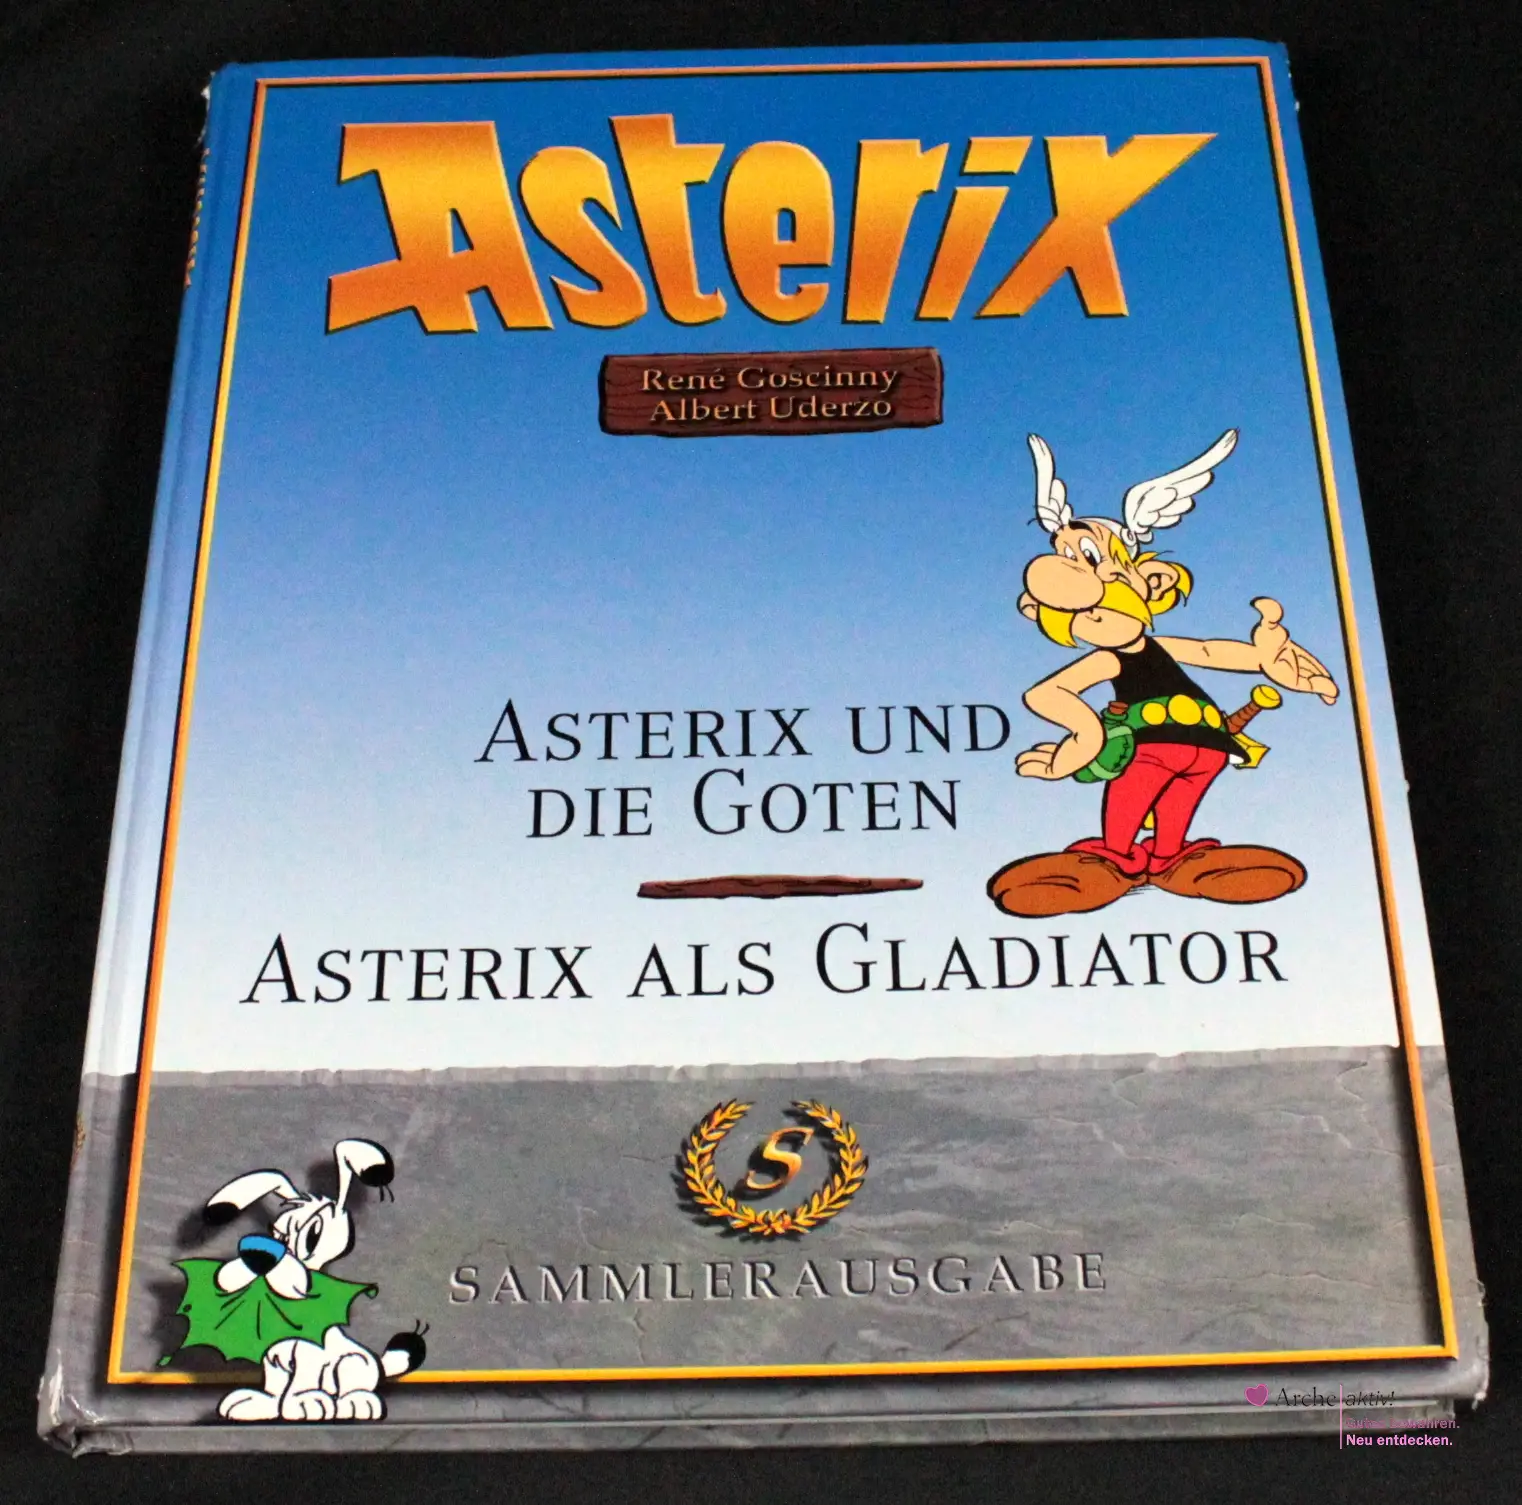 Asterix Sammlerausgabe - Asterix und die Goten / Asterix als Gladiator, gebraucht